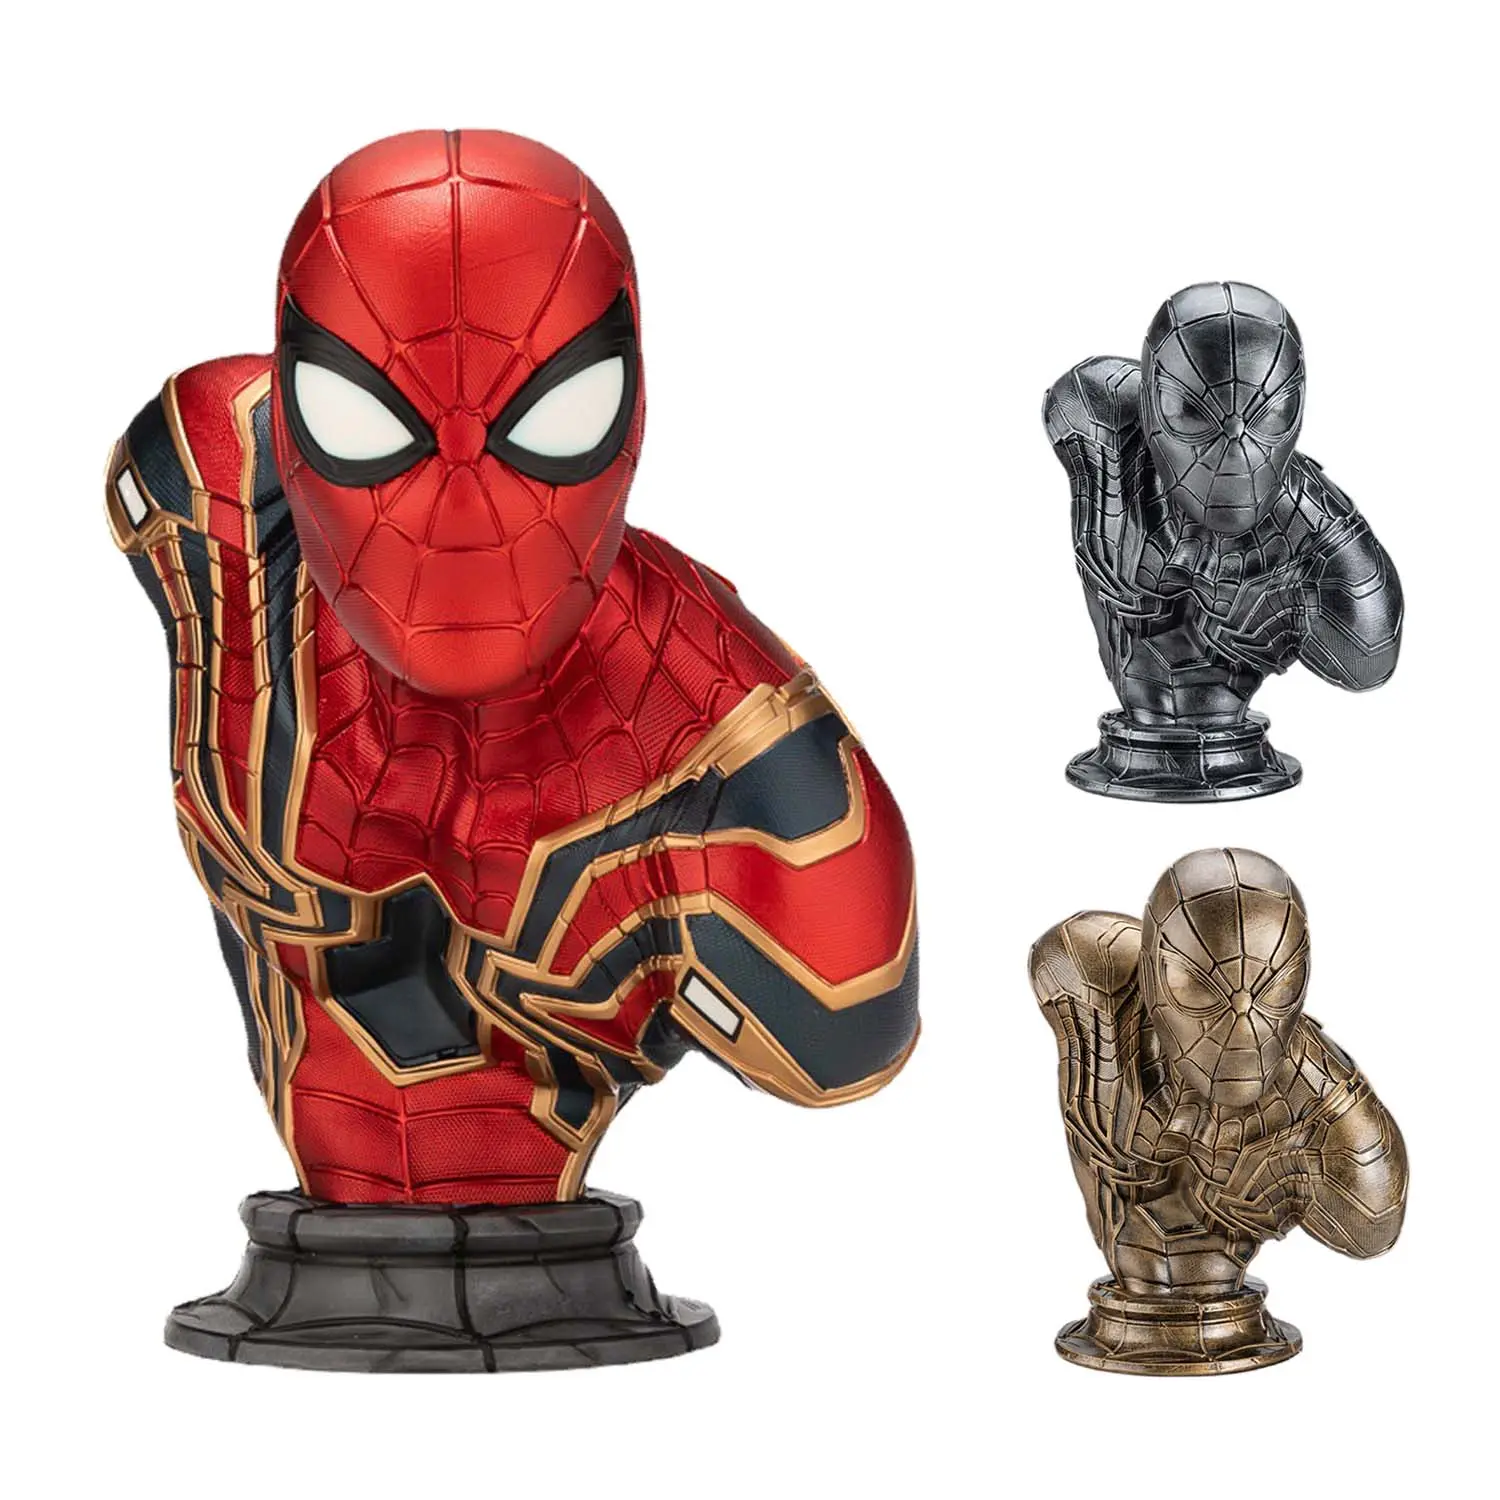 Artesanías de resina Marvel Avengers busto figura de acción Spider Man Iron Man modelo poliresina Spiderman busto escultura